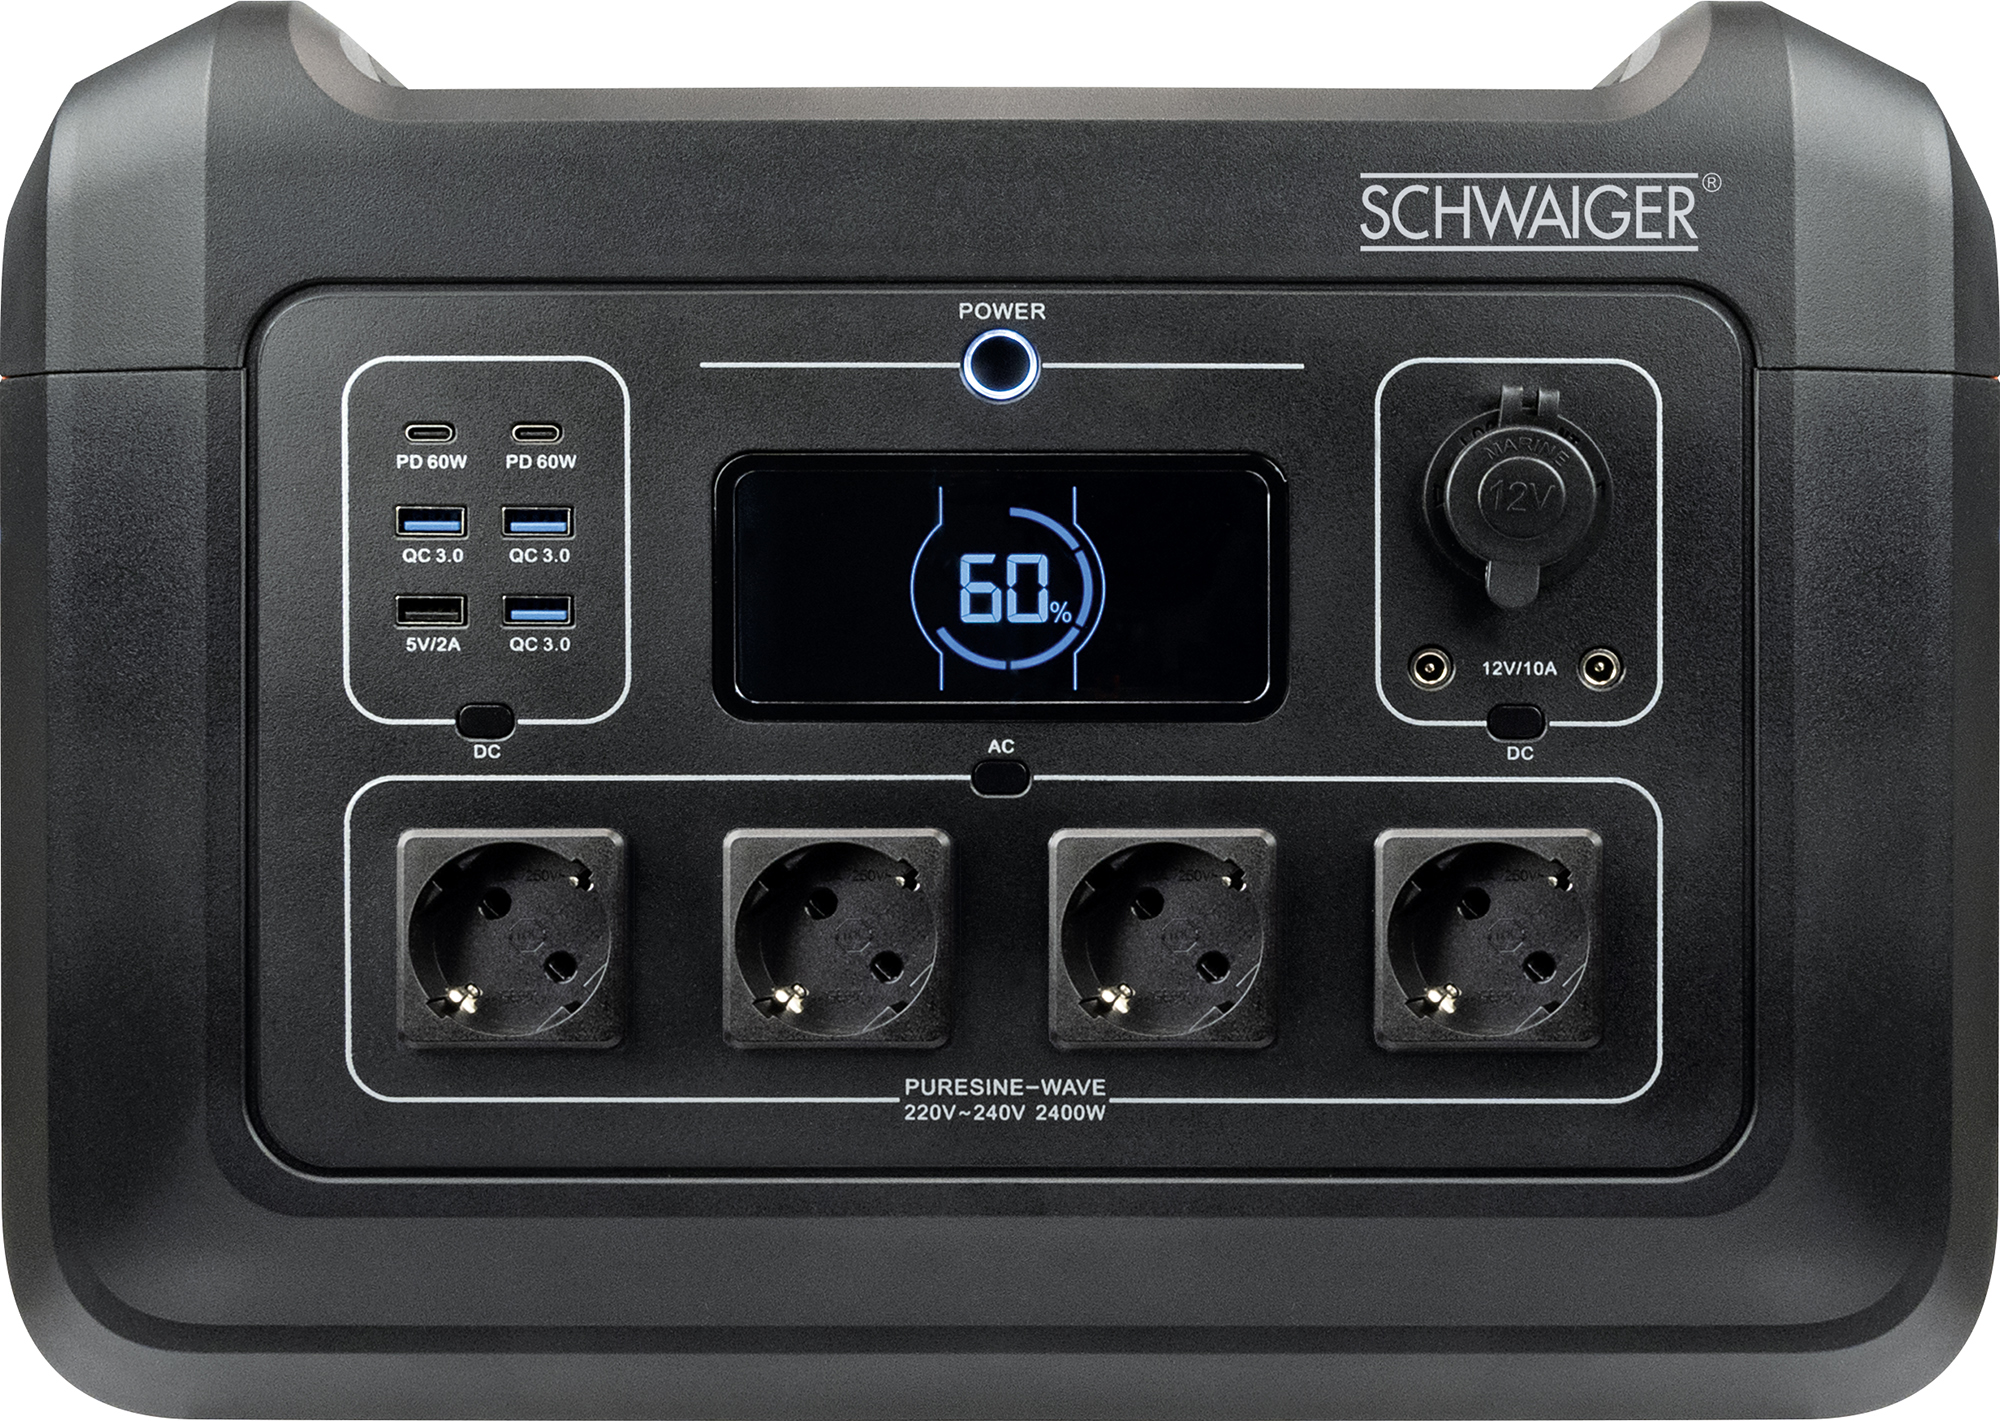 SCHWAIGER Station -SOPS2400- Power